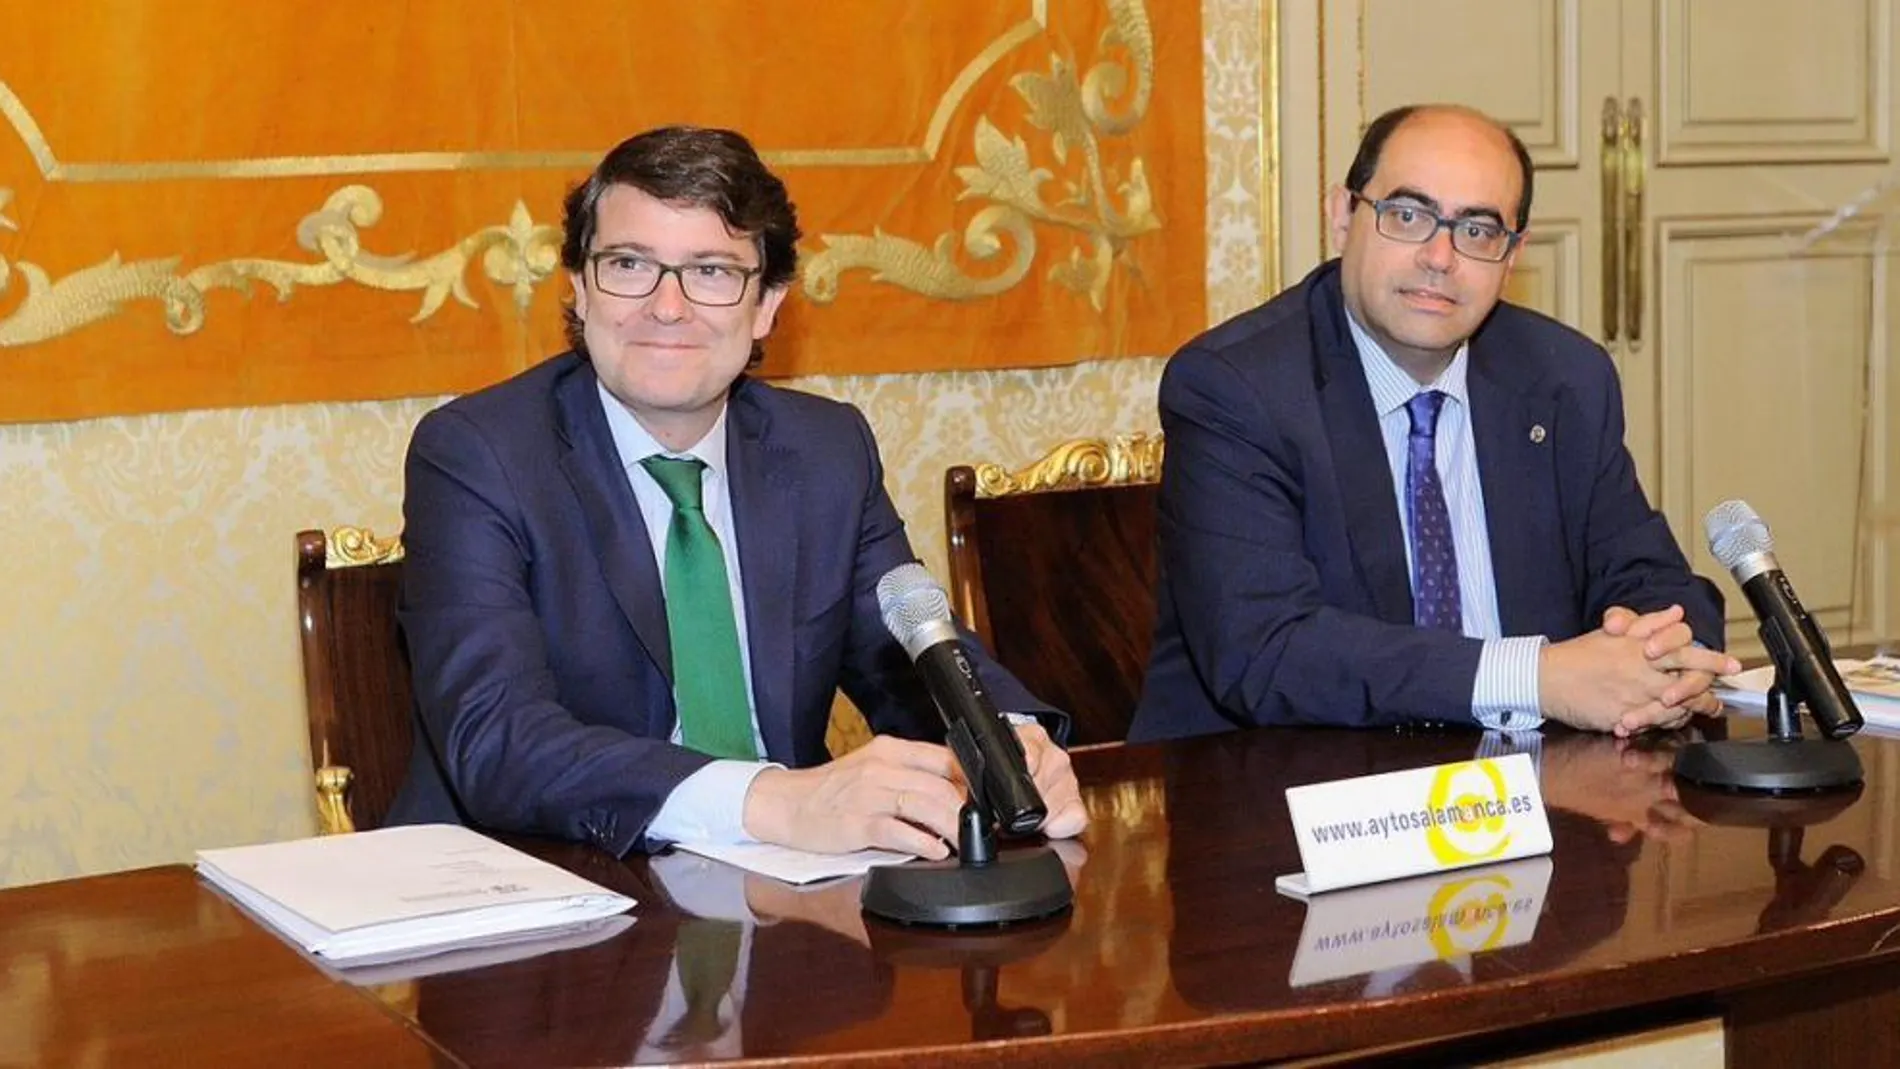 Fernández Mañueco, en la imagen junto al teniente de alcalde y portavoz del PP, Fernando Rodríguez, destaca que el pacto con Ciudadanos «está siendo positivo para Salamanca»